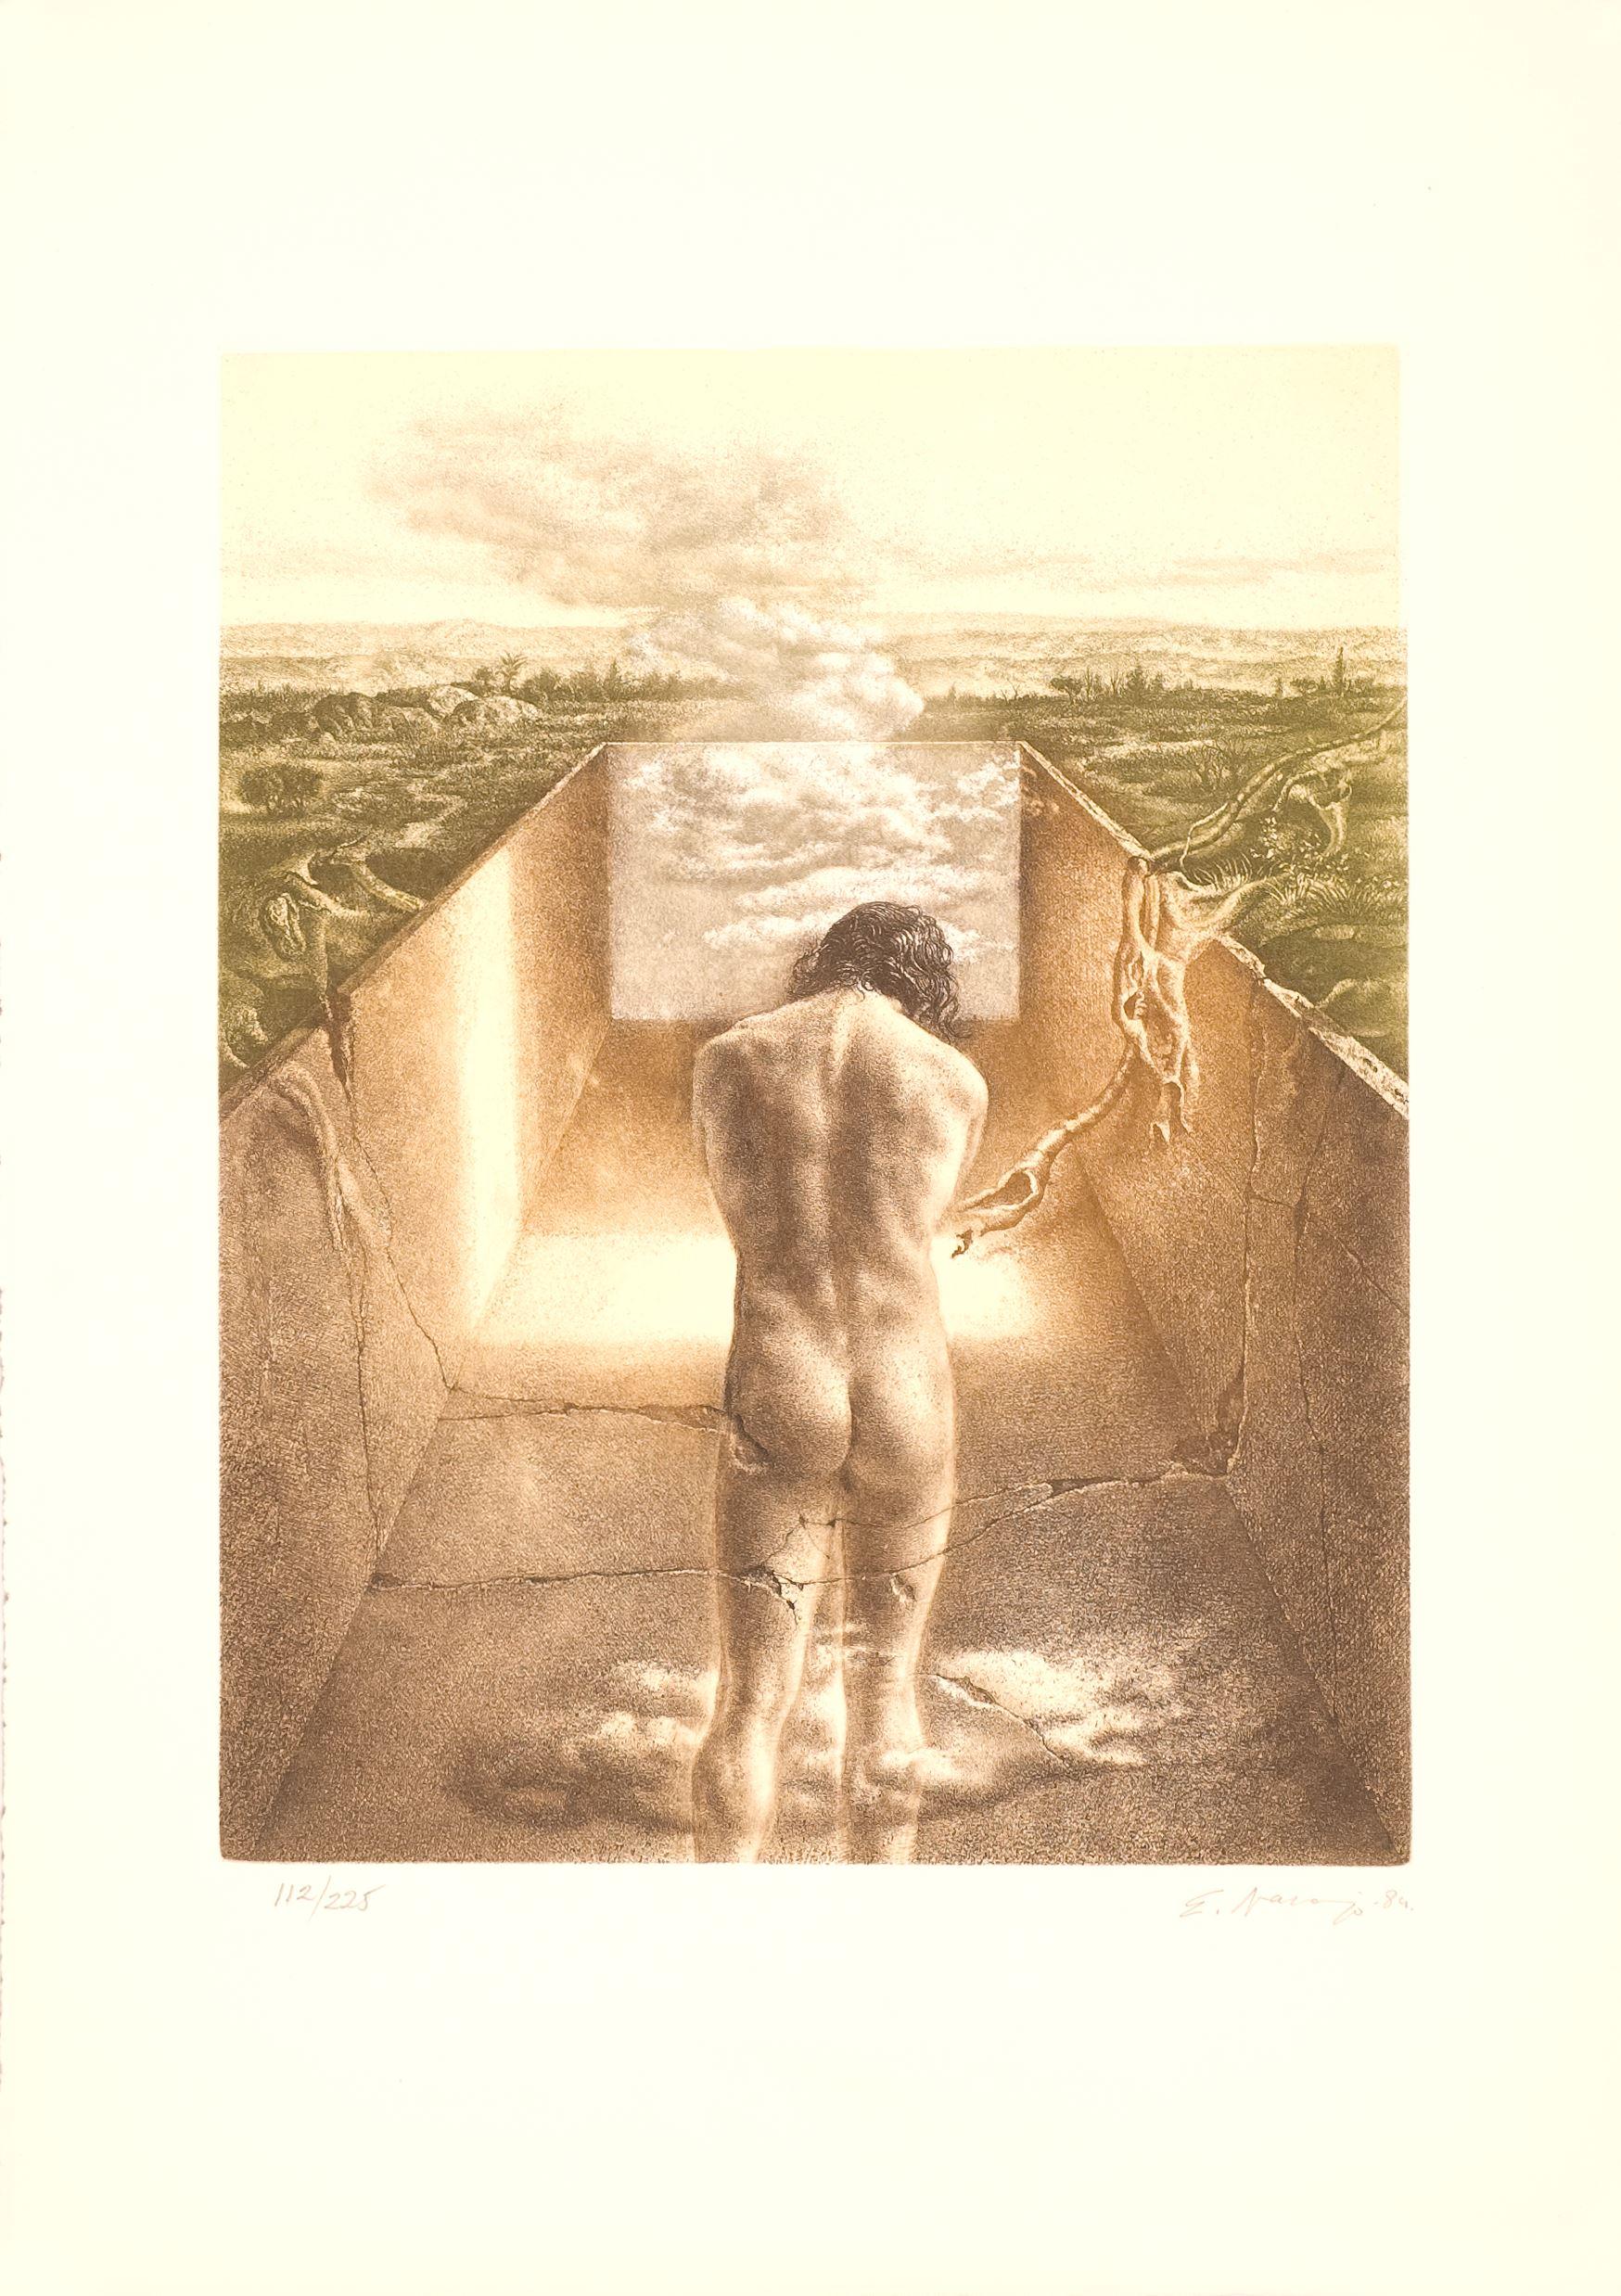 Eduardo Naranjo (Spanien, 1944)
'Creación VI', 1984
Gravur auf Papier
20,9 x 15 Zoll (53 x 38 cm.)
Auflage von 225
ID: NAR1115-003-225
Vom Autor handsigniert